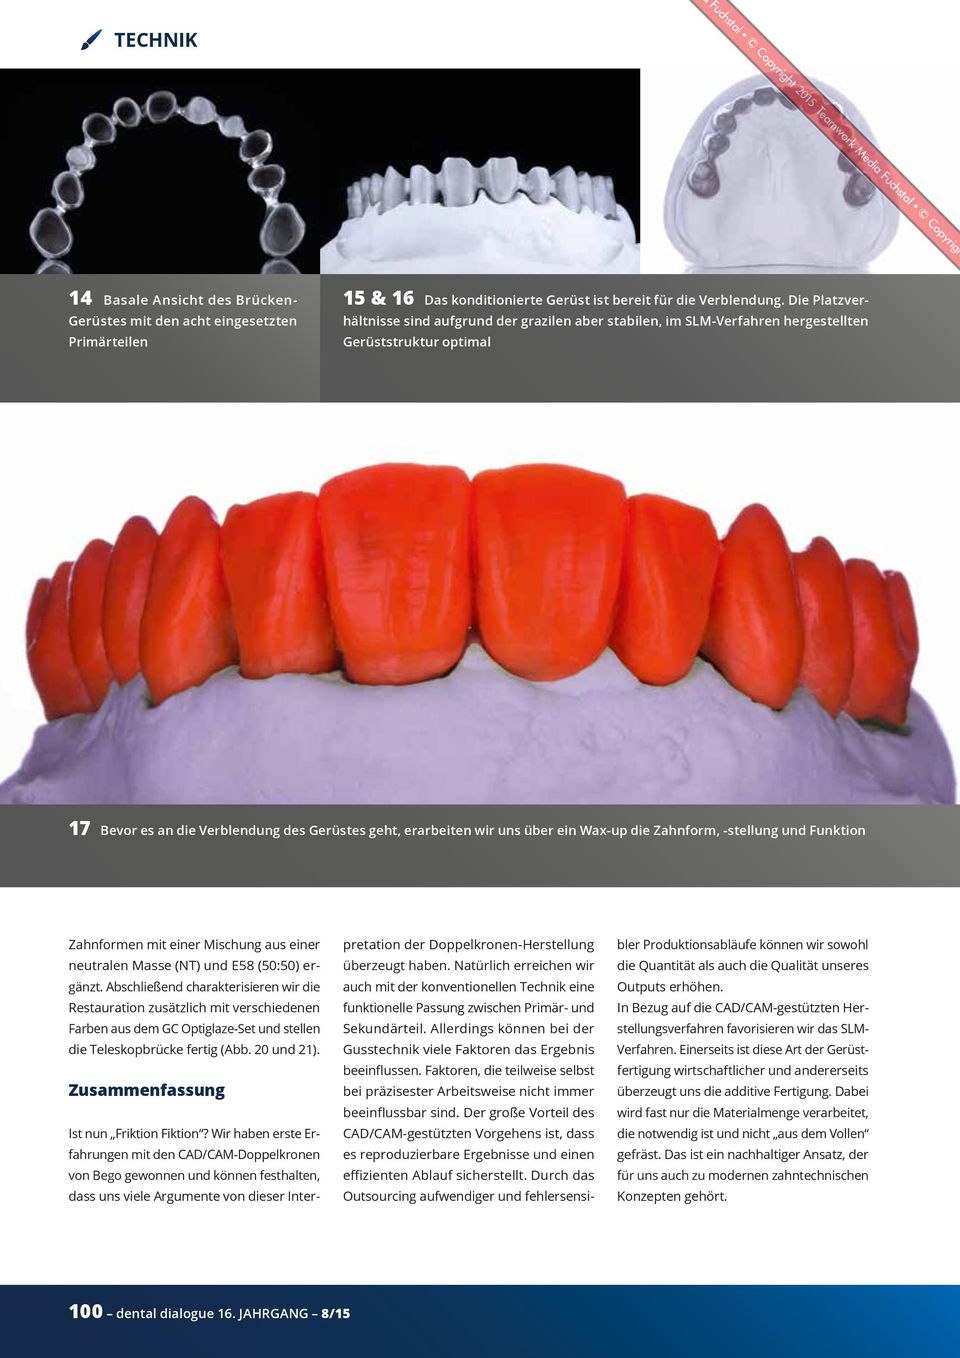 Wax-up die Zahnform, -stellung und Funktion Zahnformen mit einer Mischung aus einer neutralen Masse (NT) und E58 (50:50) ergänzt.